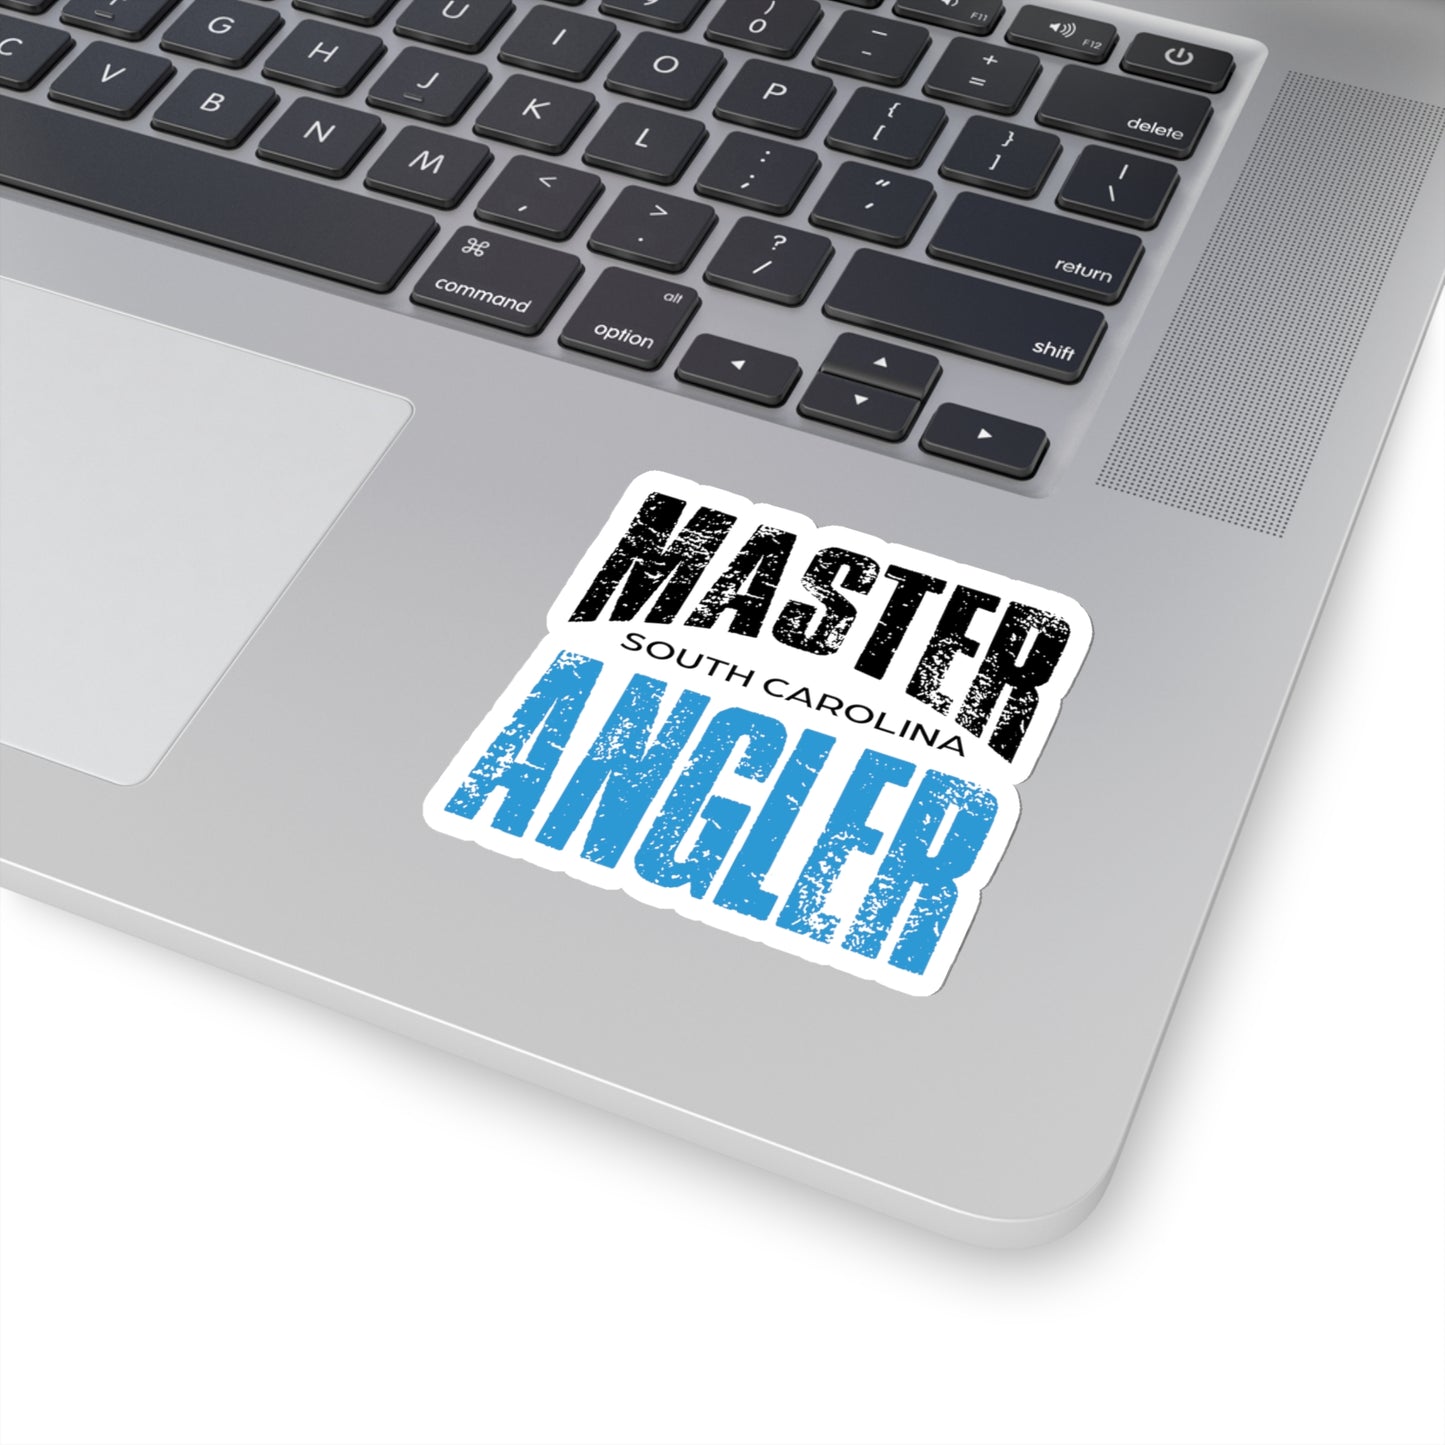 South Carolina Master Angler Sticker - BLUE